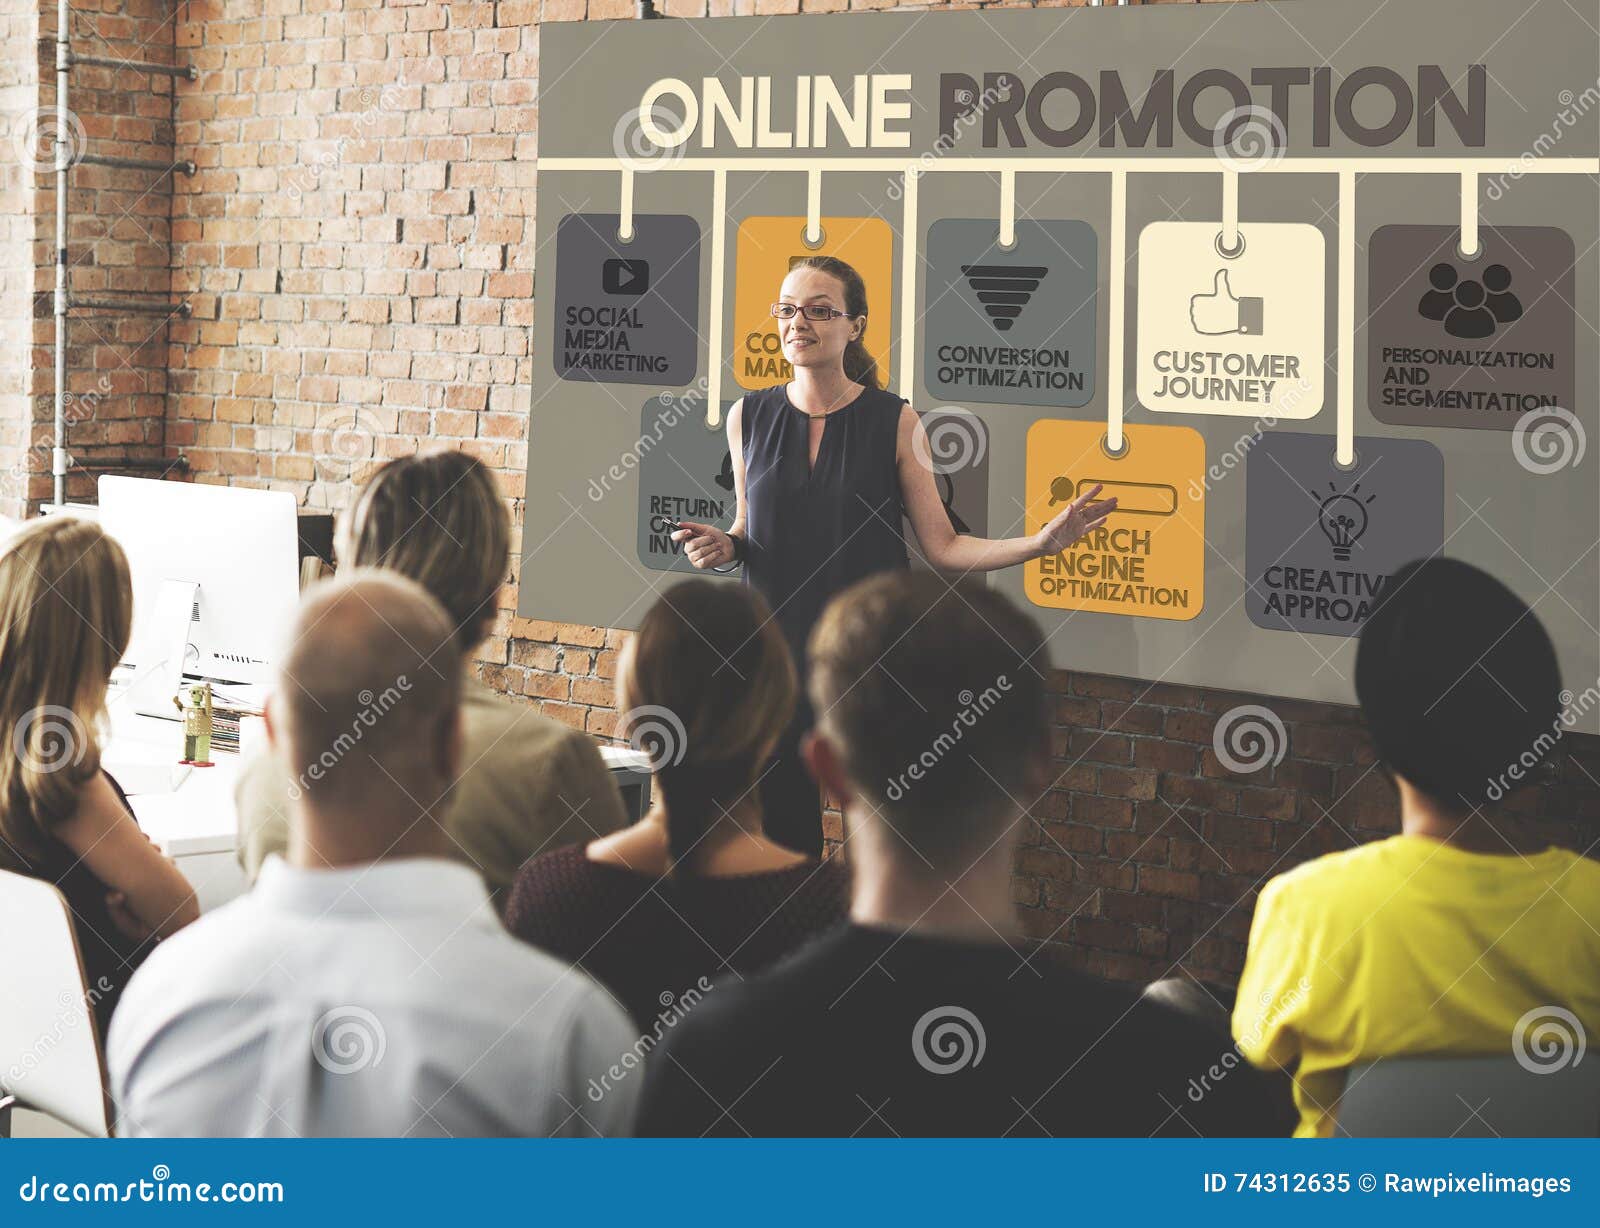 online promotion advertisement commercial concept